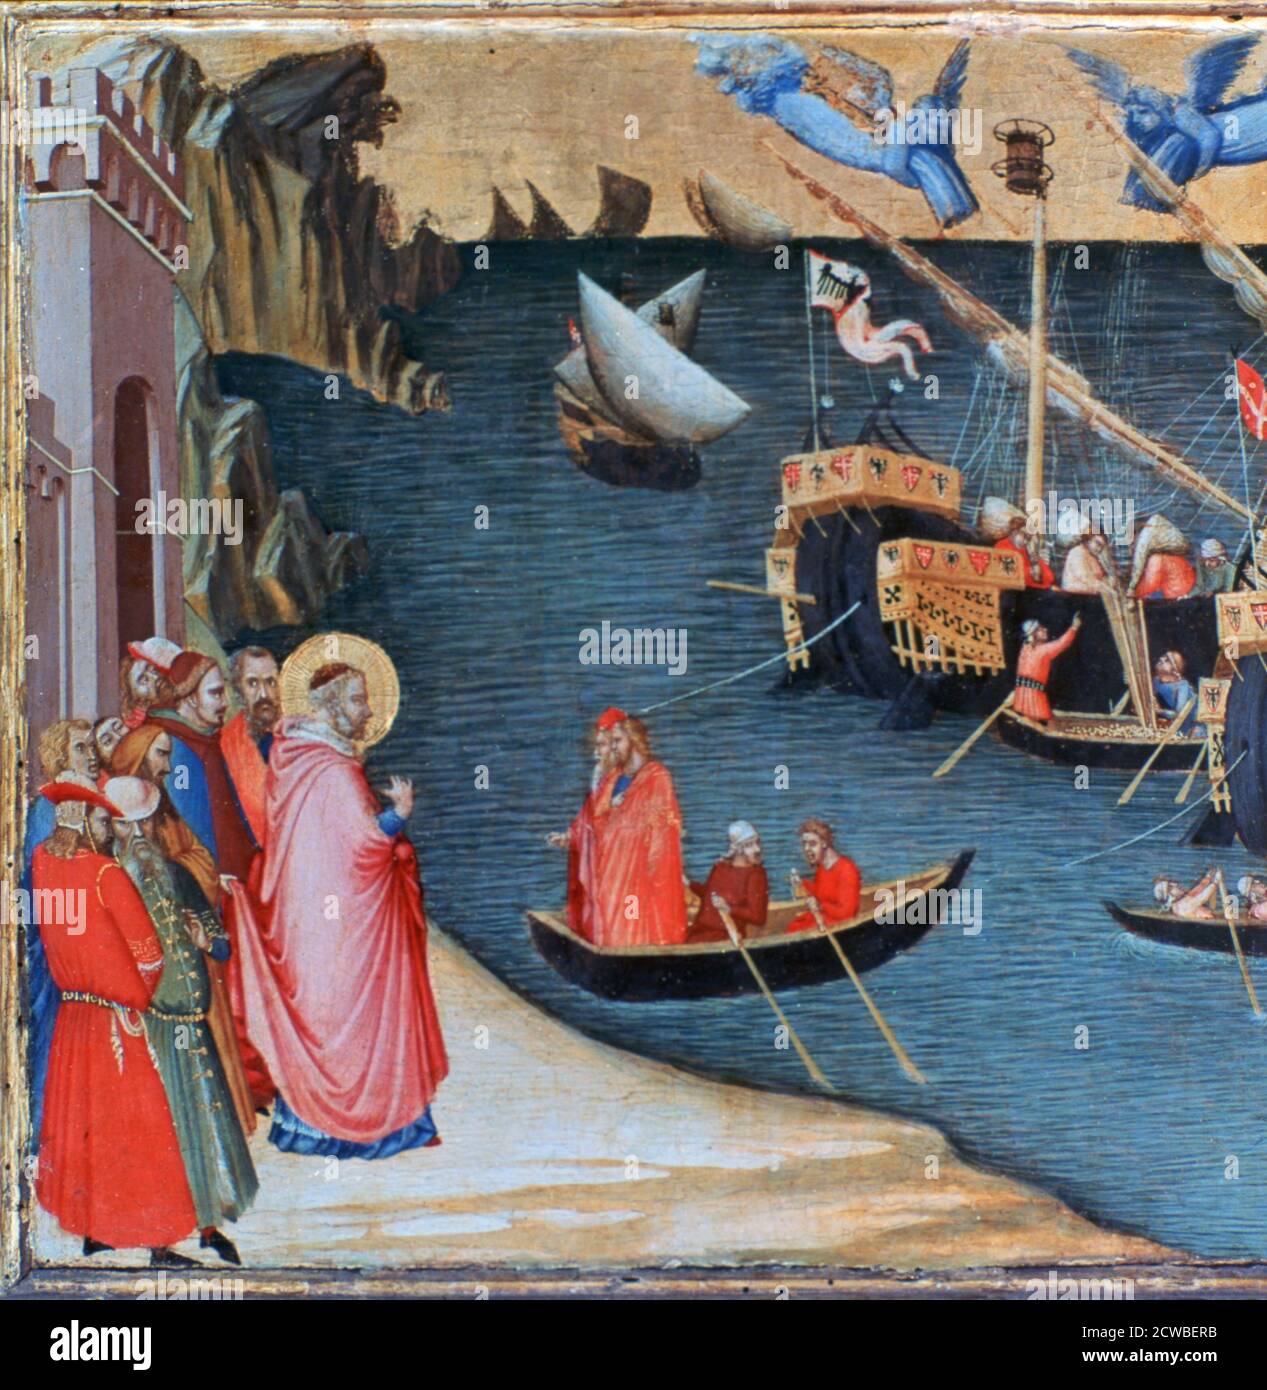 St Nicholas sauve Mira de Famine', c1327-1332. Artiste: Ambrogio Lorenzetti. Ambrogio Lorenzetti (1290-1348) est un peintre italien de l'école siennoise. Il a peint l'allégorie du bon et du mauvais gouvernement dans la Sala dei Nove dans le Palazzo Pubblico de Sienne. Banque D'Images